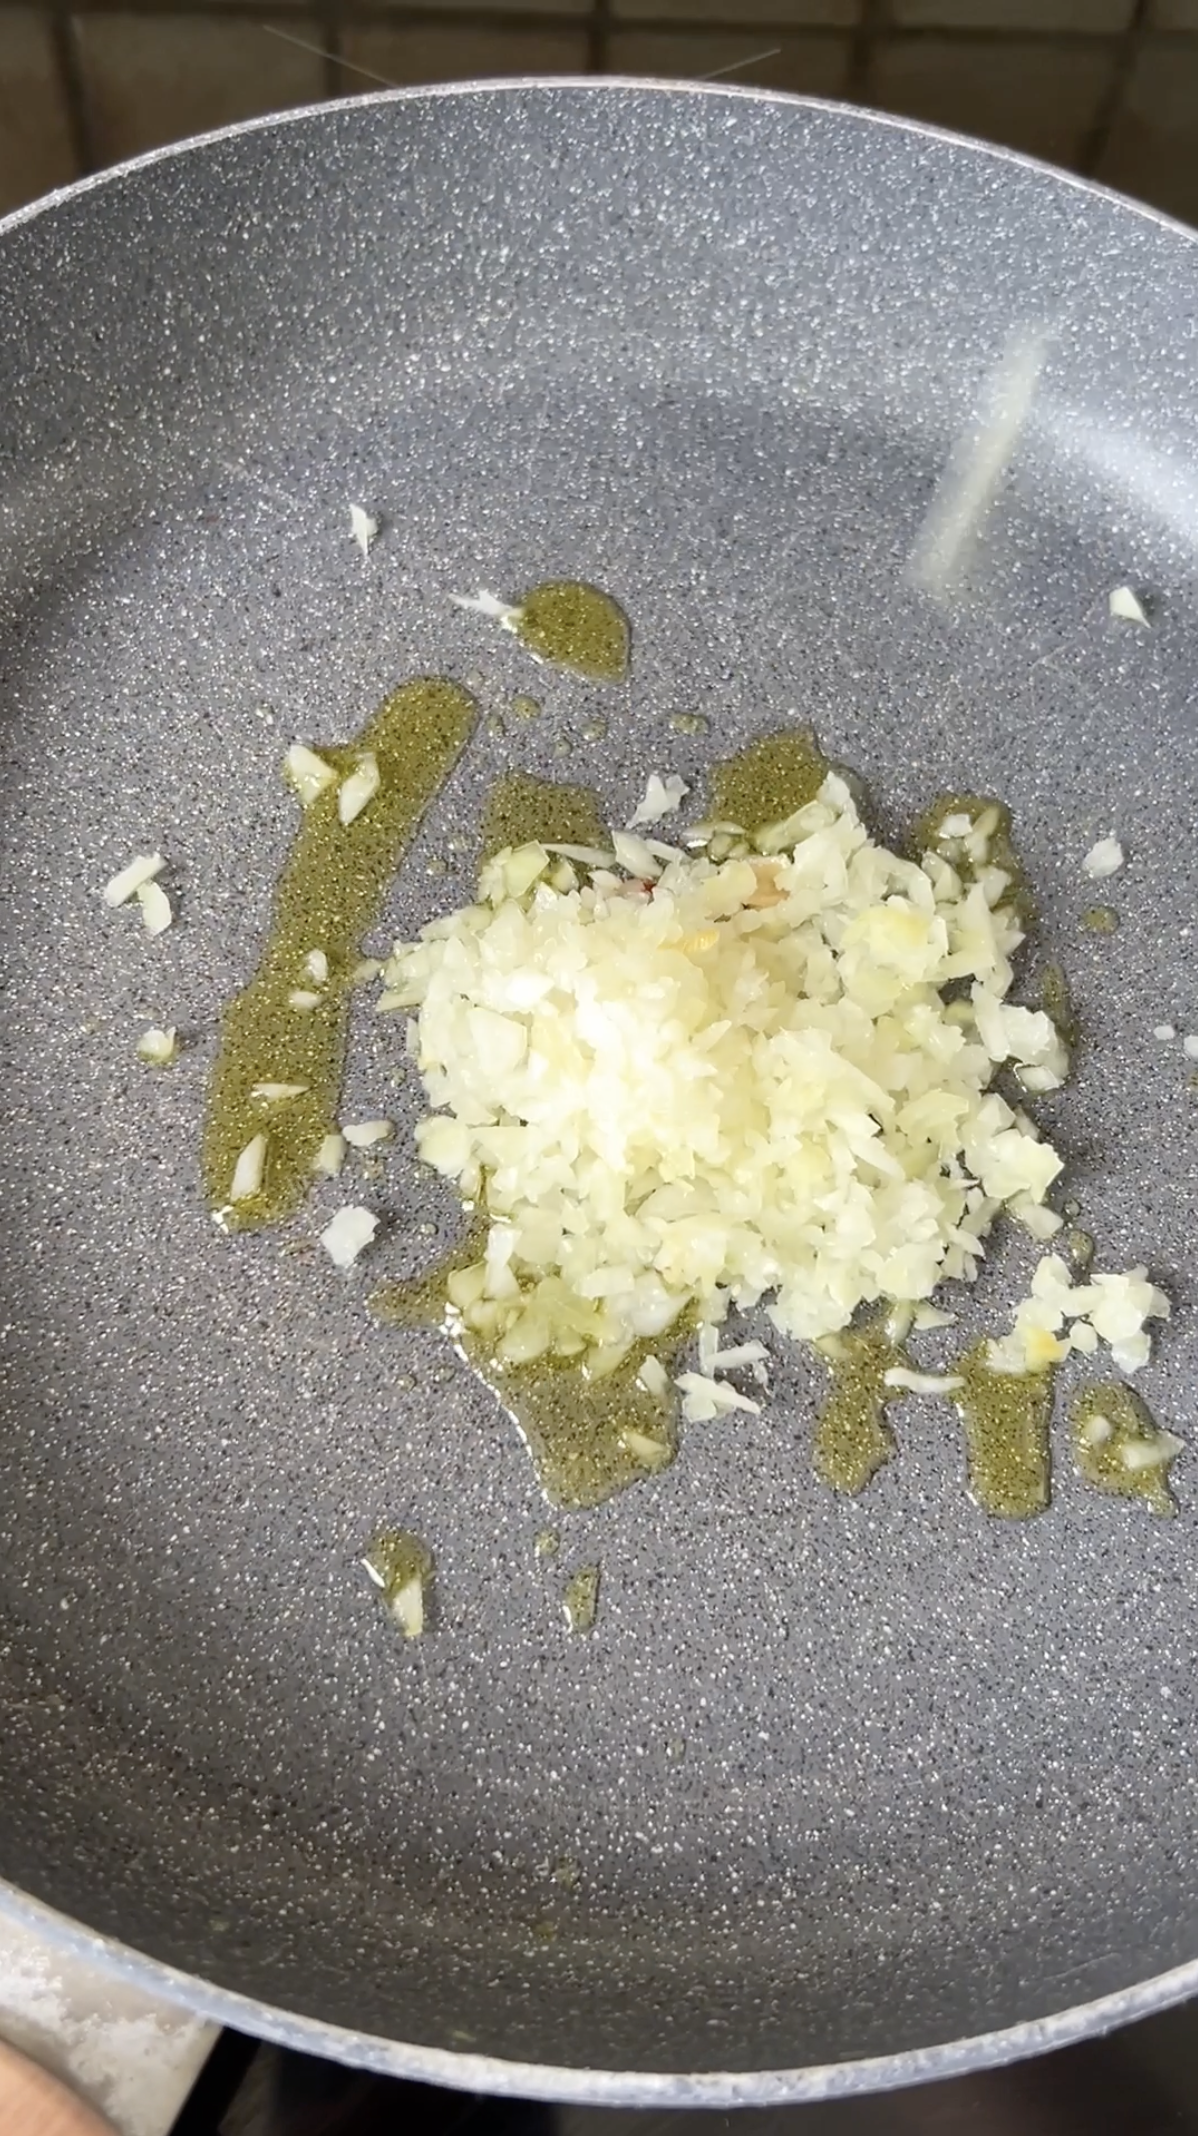 Oignon finement émincé dans une poêle grise avec de l'huile d'olive.